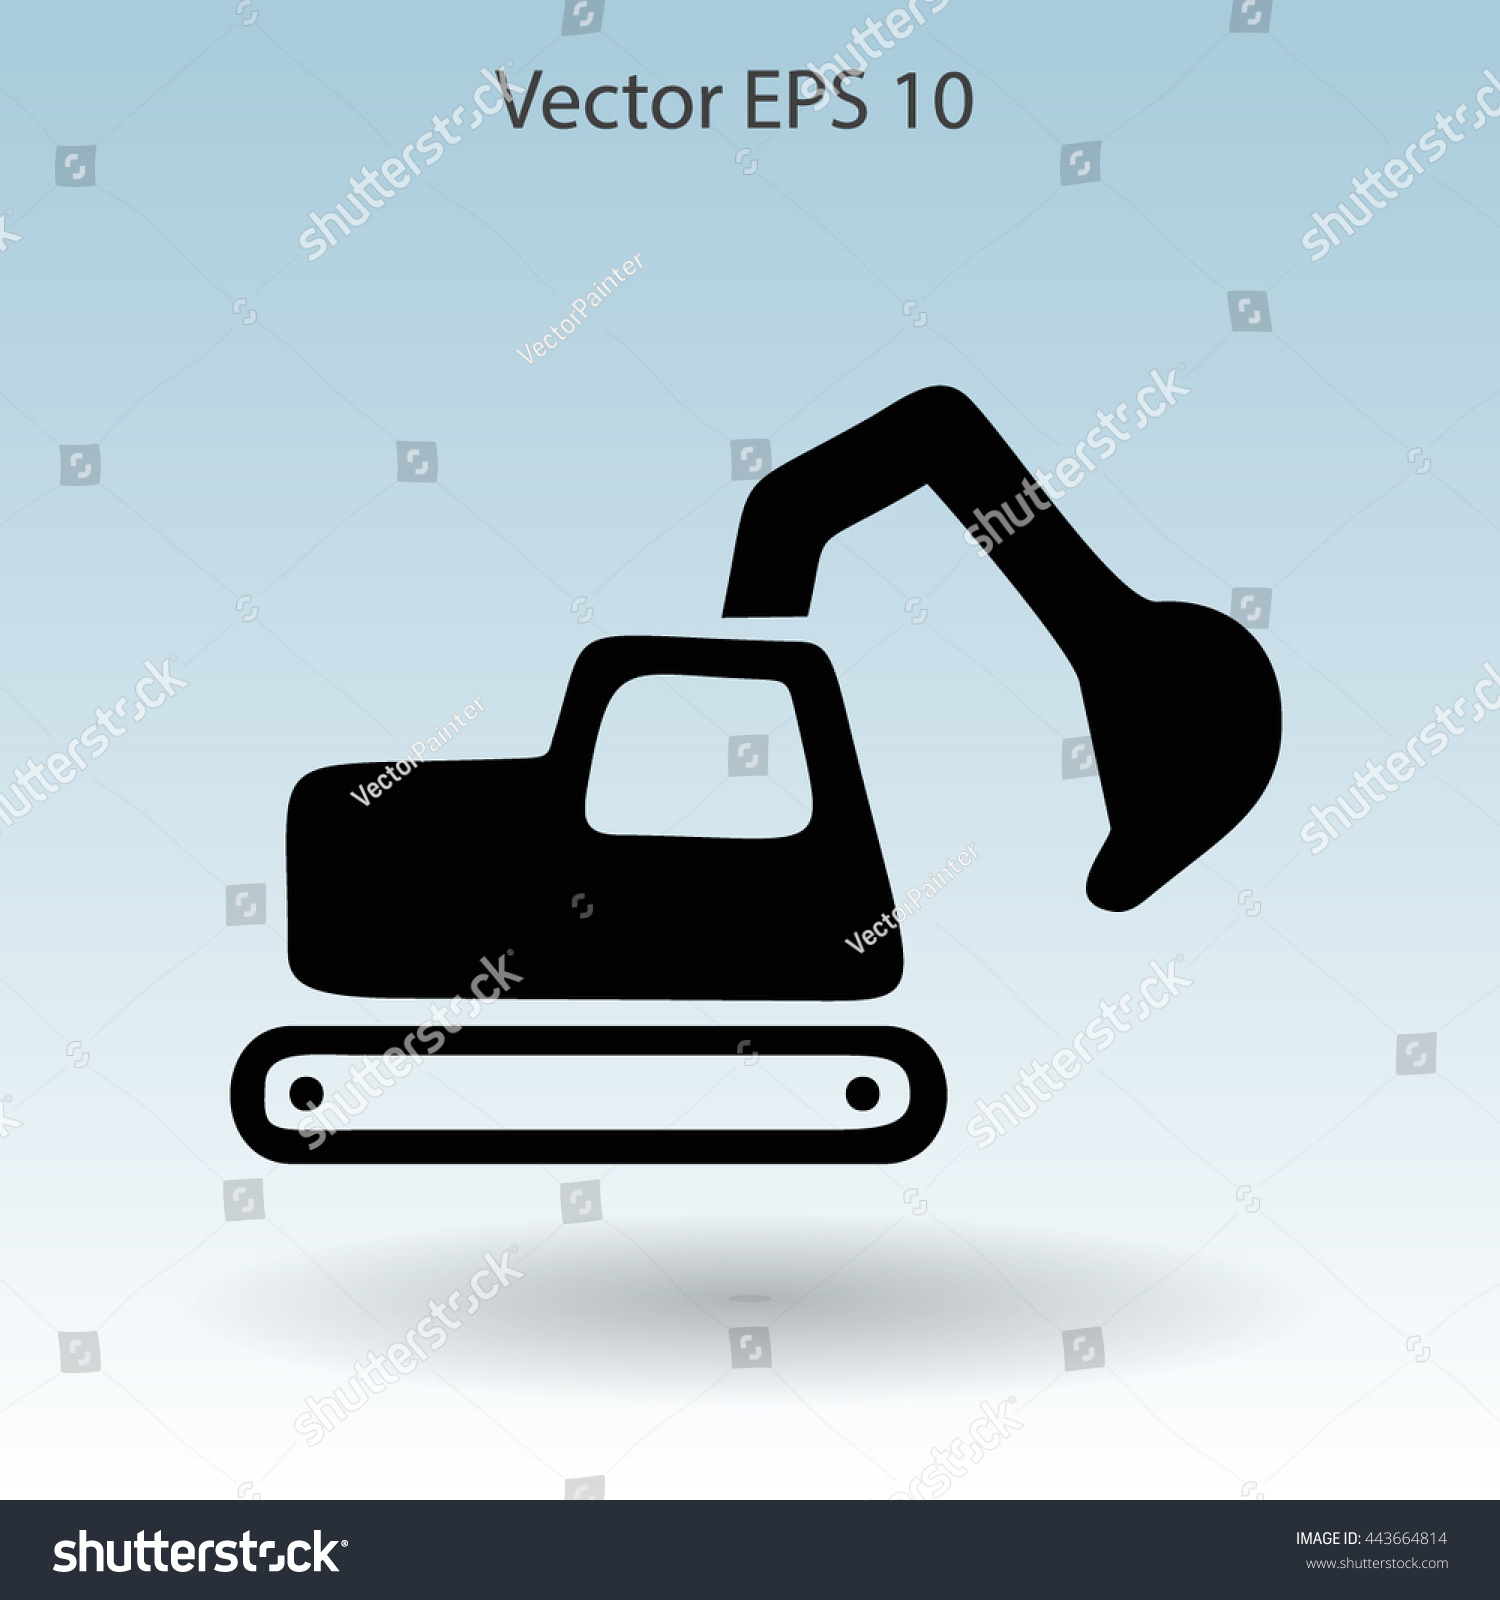 Edit Vectors Free Online - Flat excavator | Shutterstock Editor